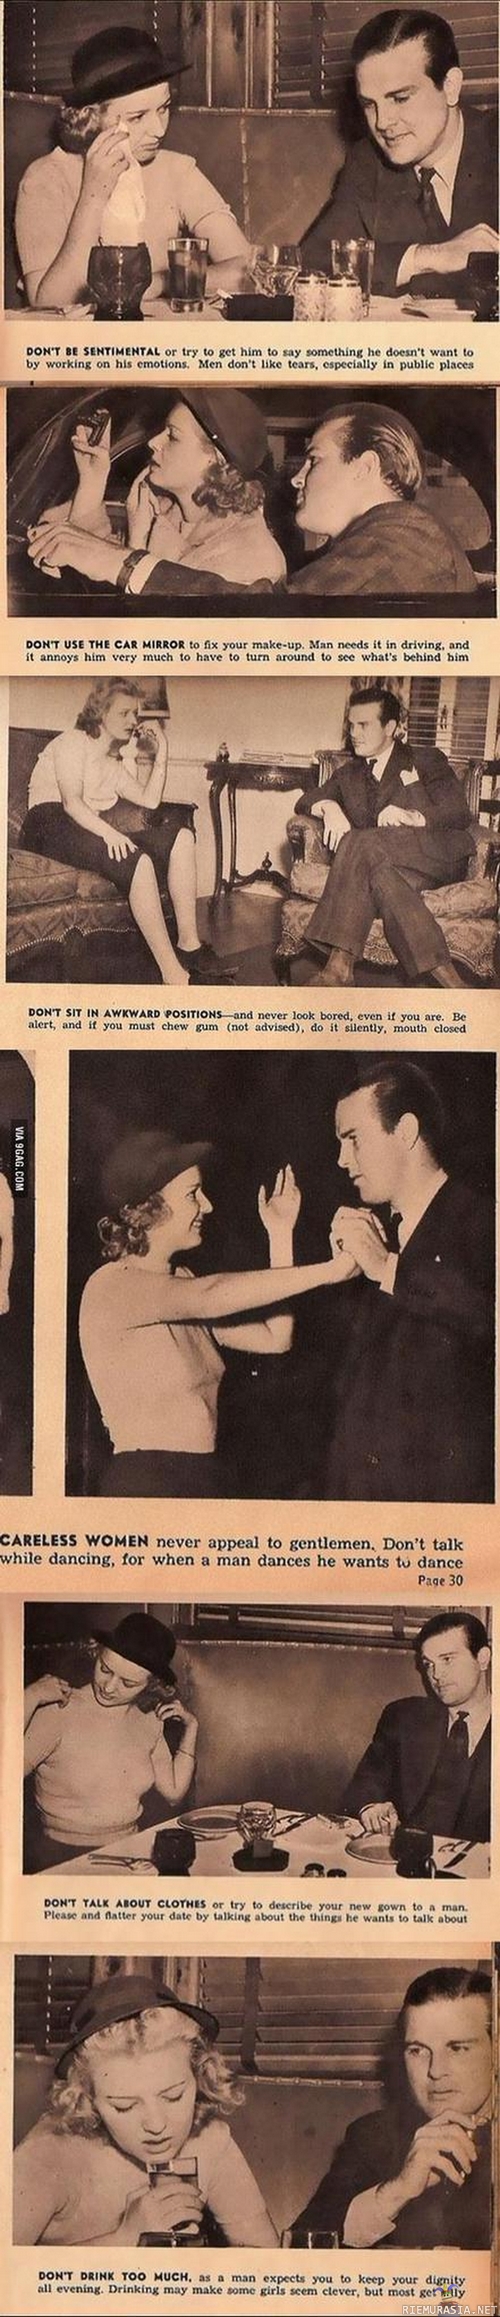 Naisille vinkkejä treffeille - Treffivinkit vuodelta 1938